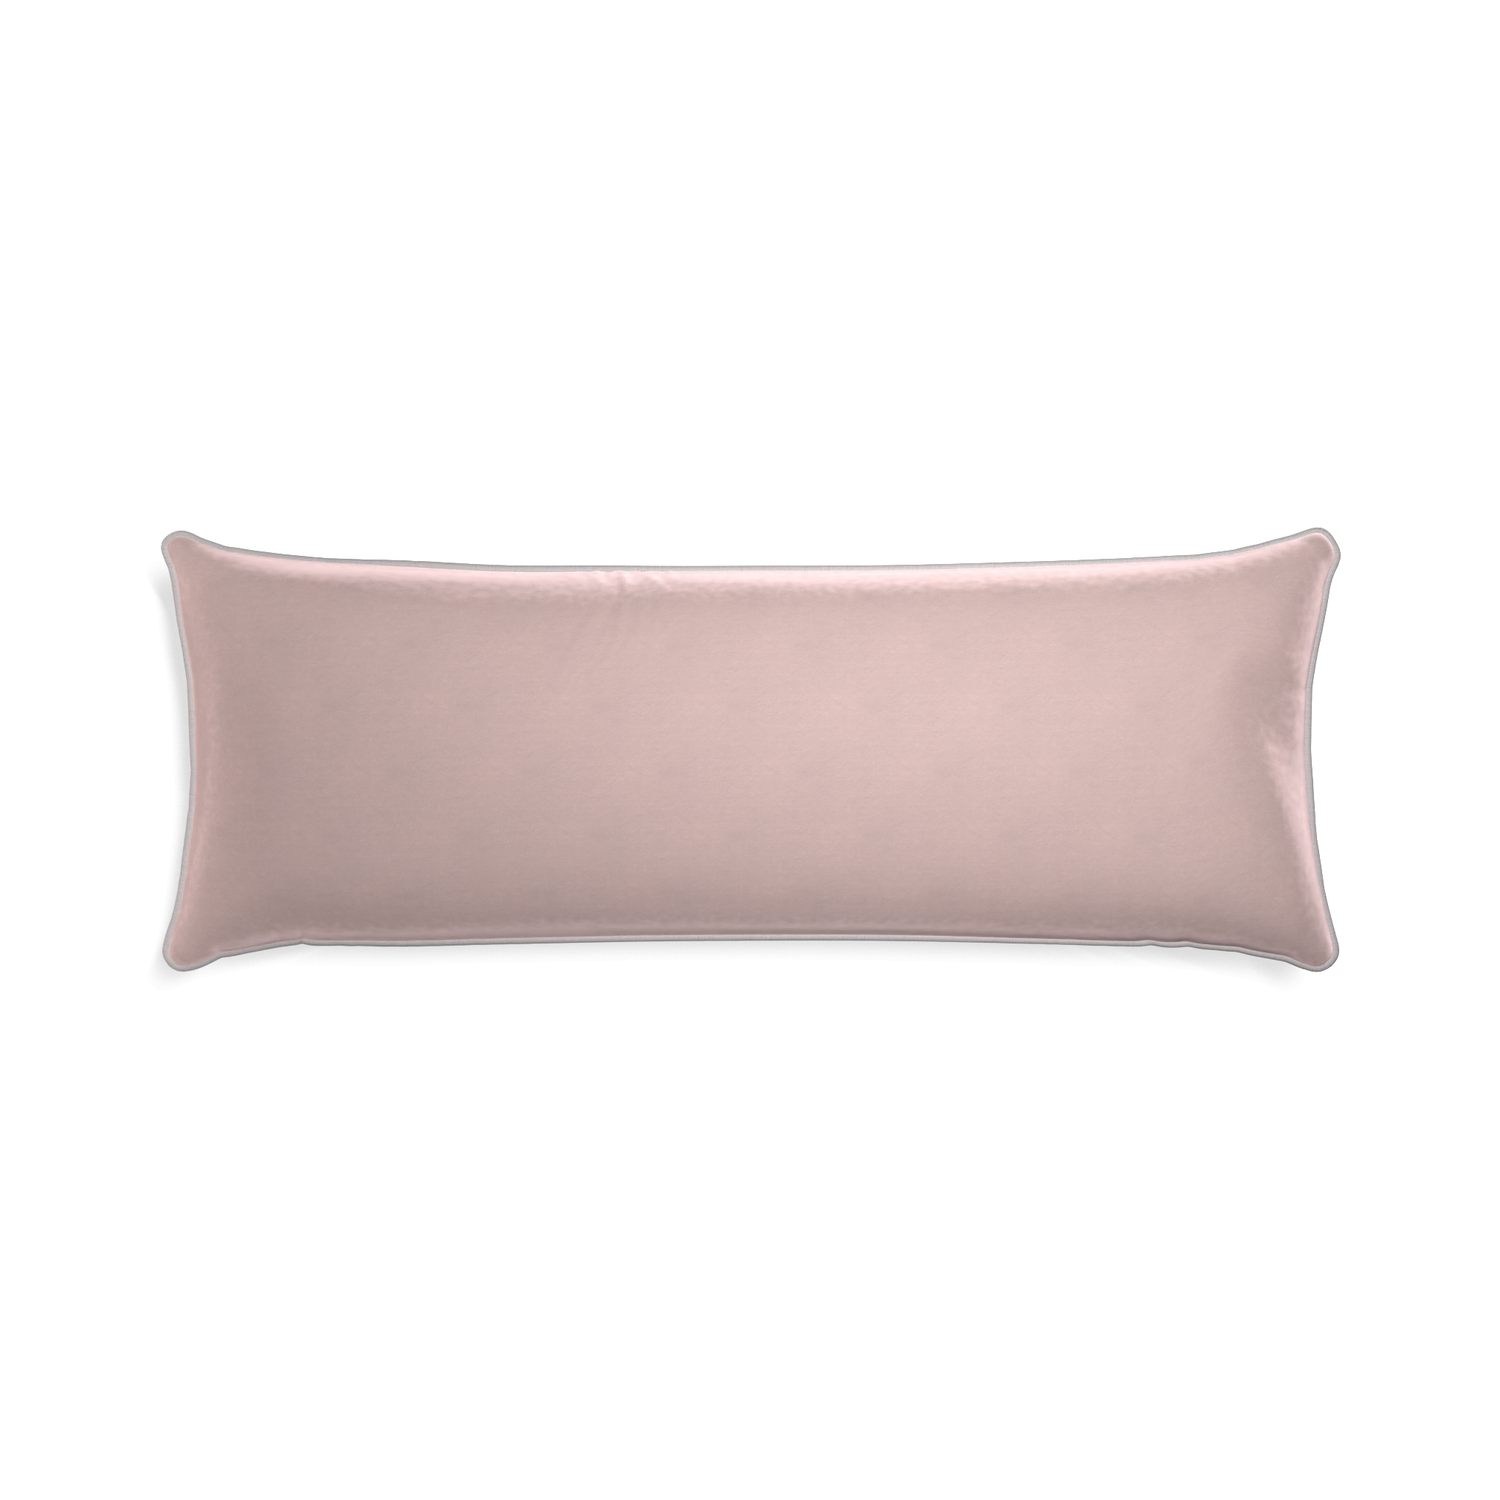 rectangle light pink velvet pillow grey piping